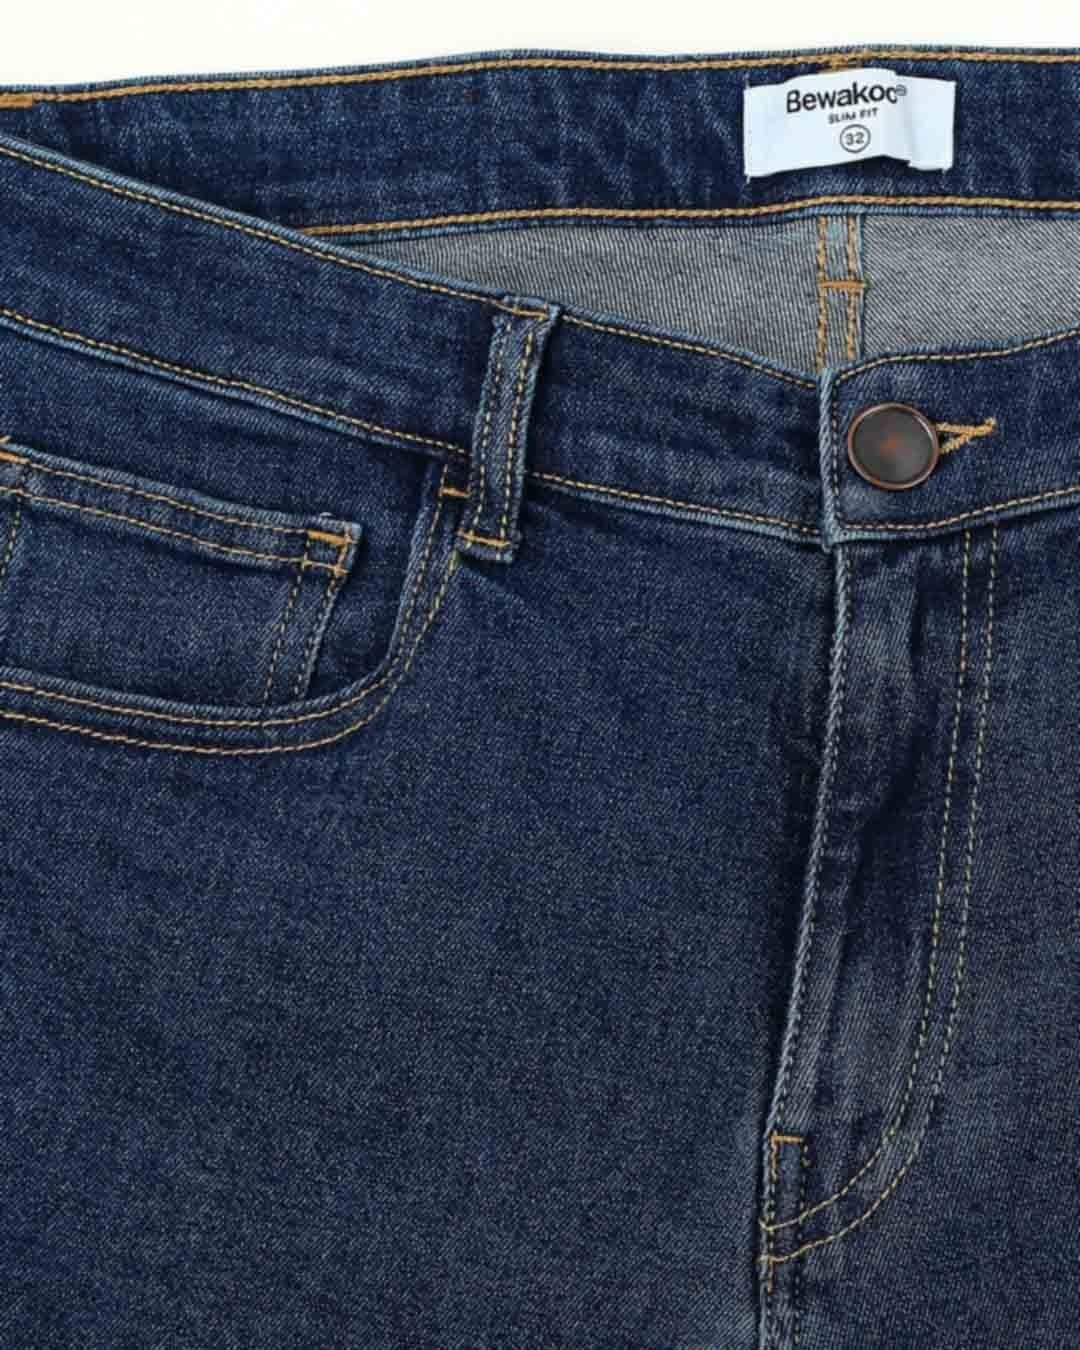 Shop Indigo Denim Pants Mid Rise Stretchable Men's Jeans